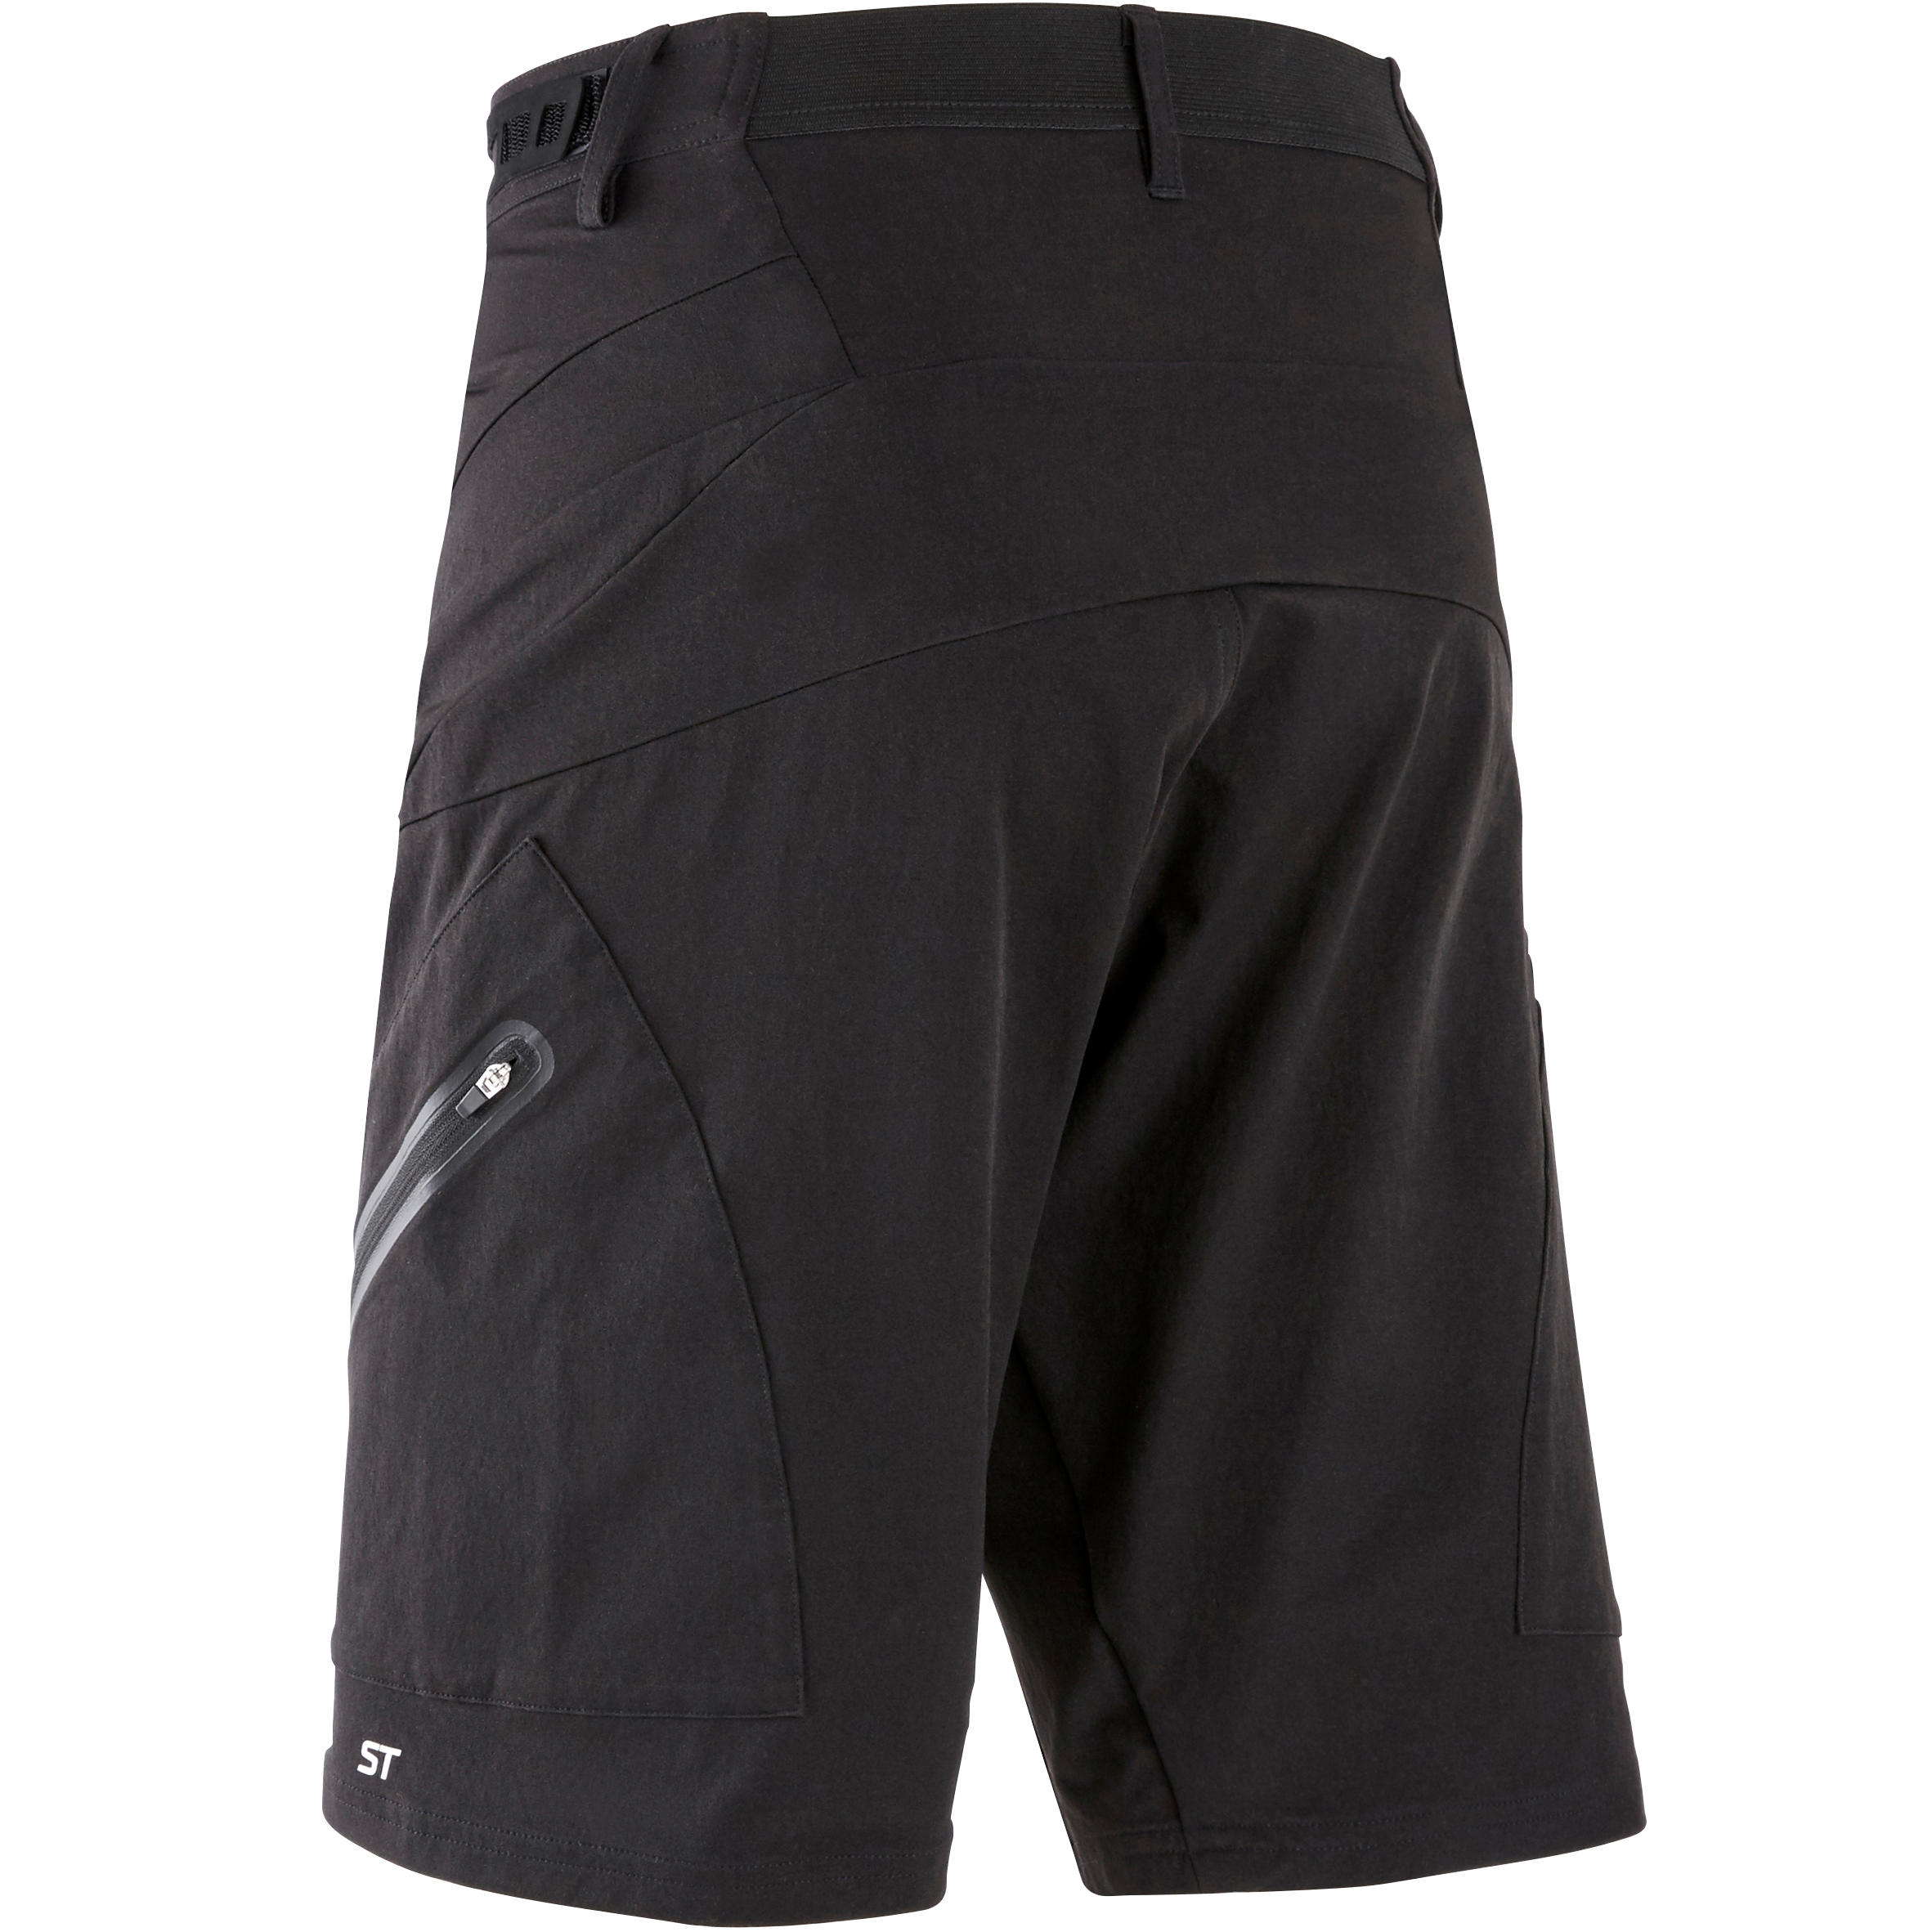 waterproof cycle shorts